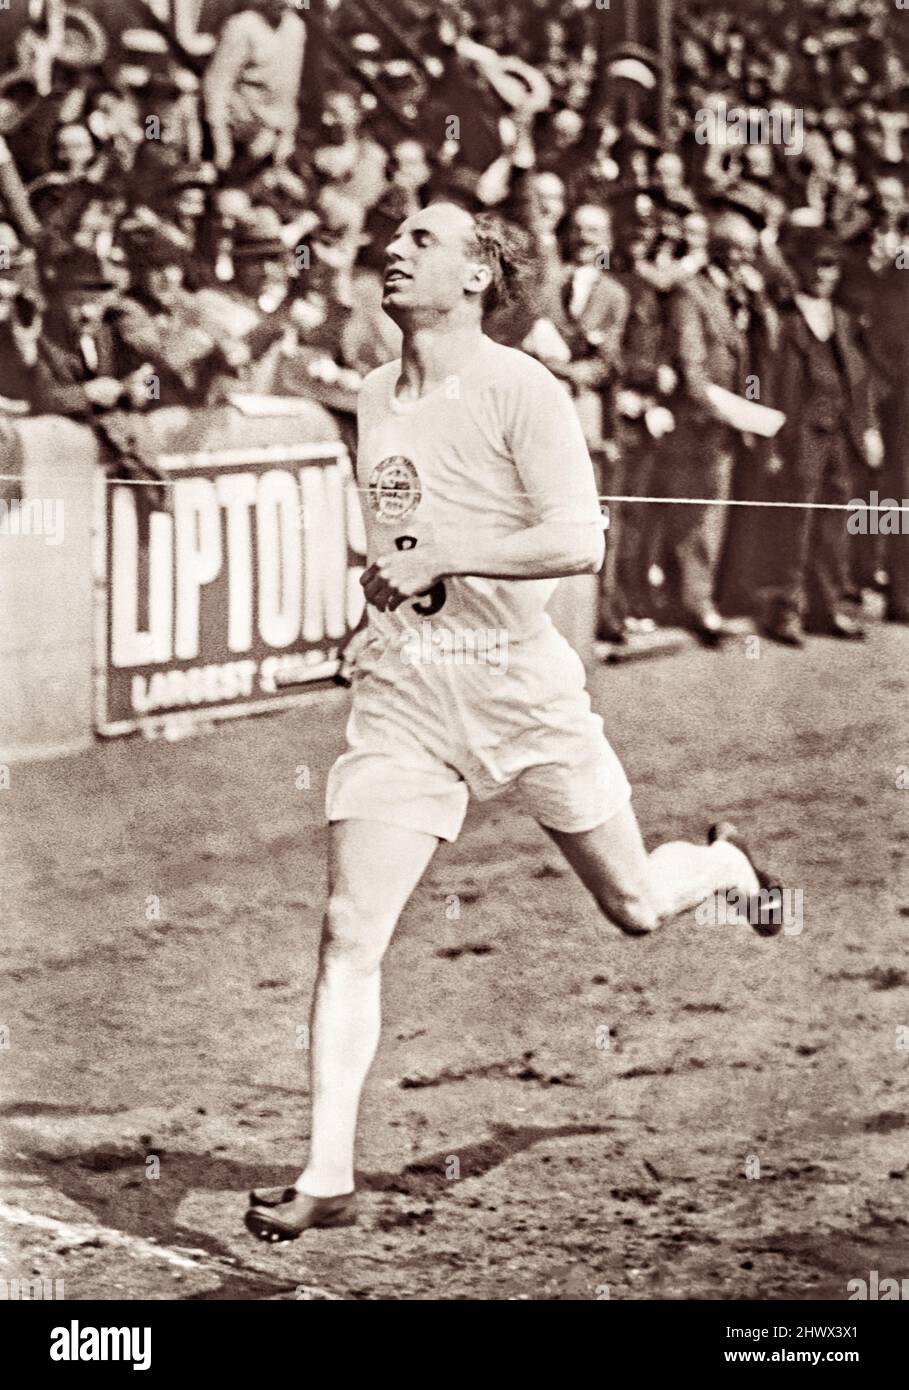 L'atleta olimpico scozzese Eric Liddell ha vinto il British Empire vs USA 1-Mile Relay all'International Athletics Meeting tenutosi a Stamford Bridge, Londra sabato 19 luglio 1924, in seguito alle Olimpiadi di Parigi. A causa delle convinzioni personali della sua fede cristiana, Liddell notoriamente rifiutò di correre i suoi 100 metri favoriti nelle Olimpiadi del 1924 perché la gara si tenne la domenica. Invece ha gareggiato nella corsa di 400 metri, che ha vinto. Nel 1925 Liddell tornò in Cina (dove nacque) e vi servì come missionario fino alla sua morte nel 1945 in un campo di internamento civile giapponese. Foto Stock